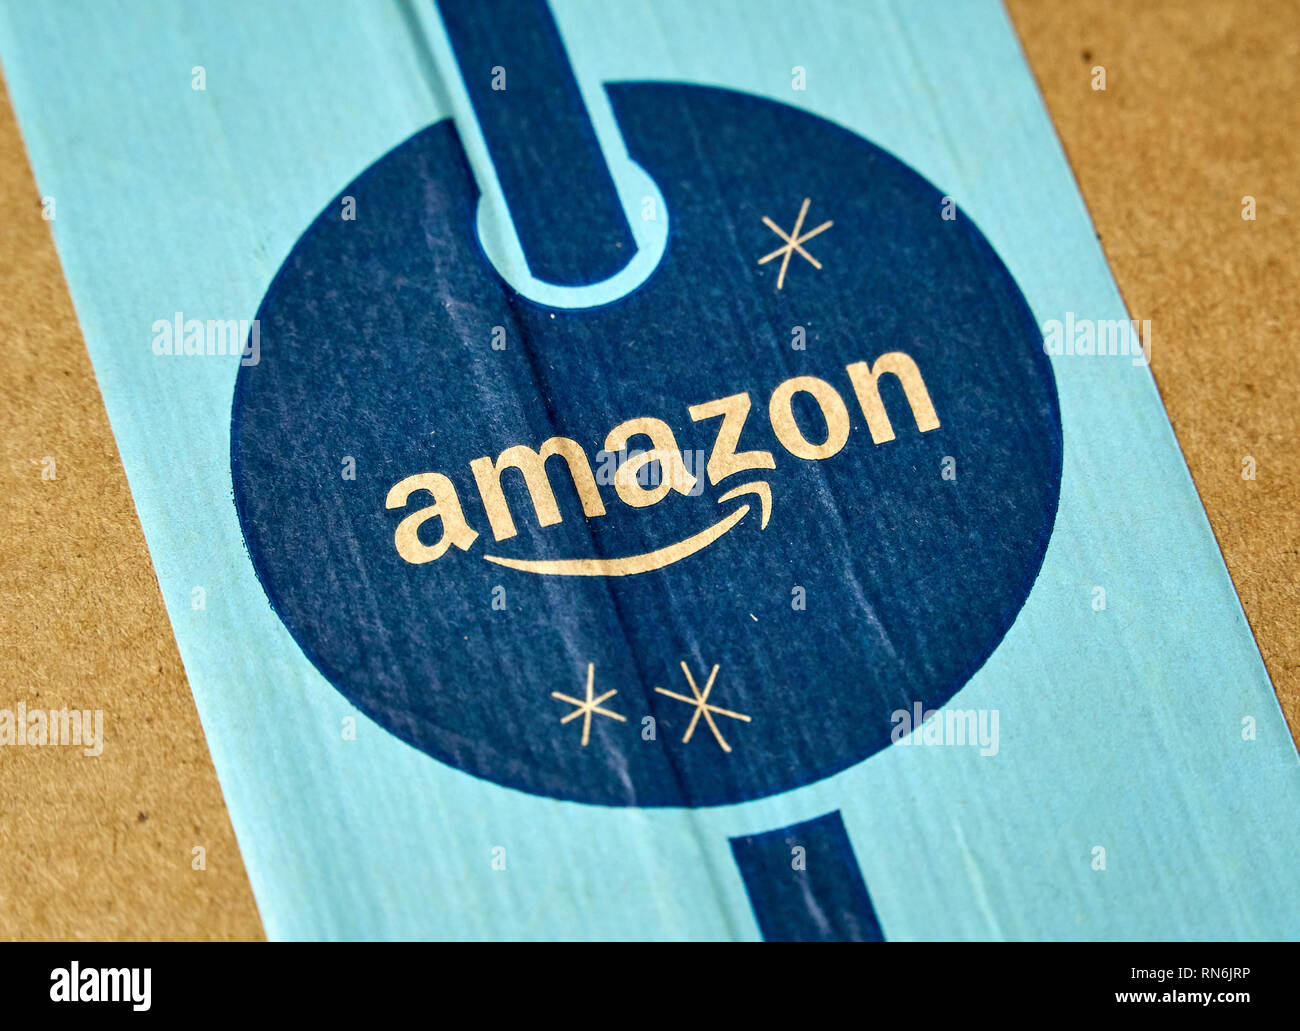 MONTREAL, Canada - 1 gennaio 2019: la perfezione del Amazon pacchetto vacanza con il logo. Amazon, è un americano di tecnologia azienda concentrandosi sul commercio elettronico e i servizi cloud Foto Stock